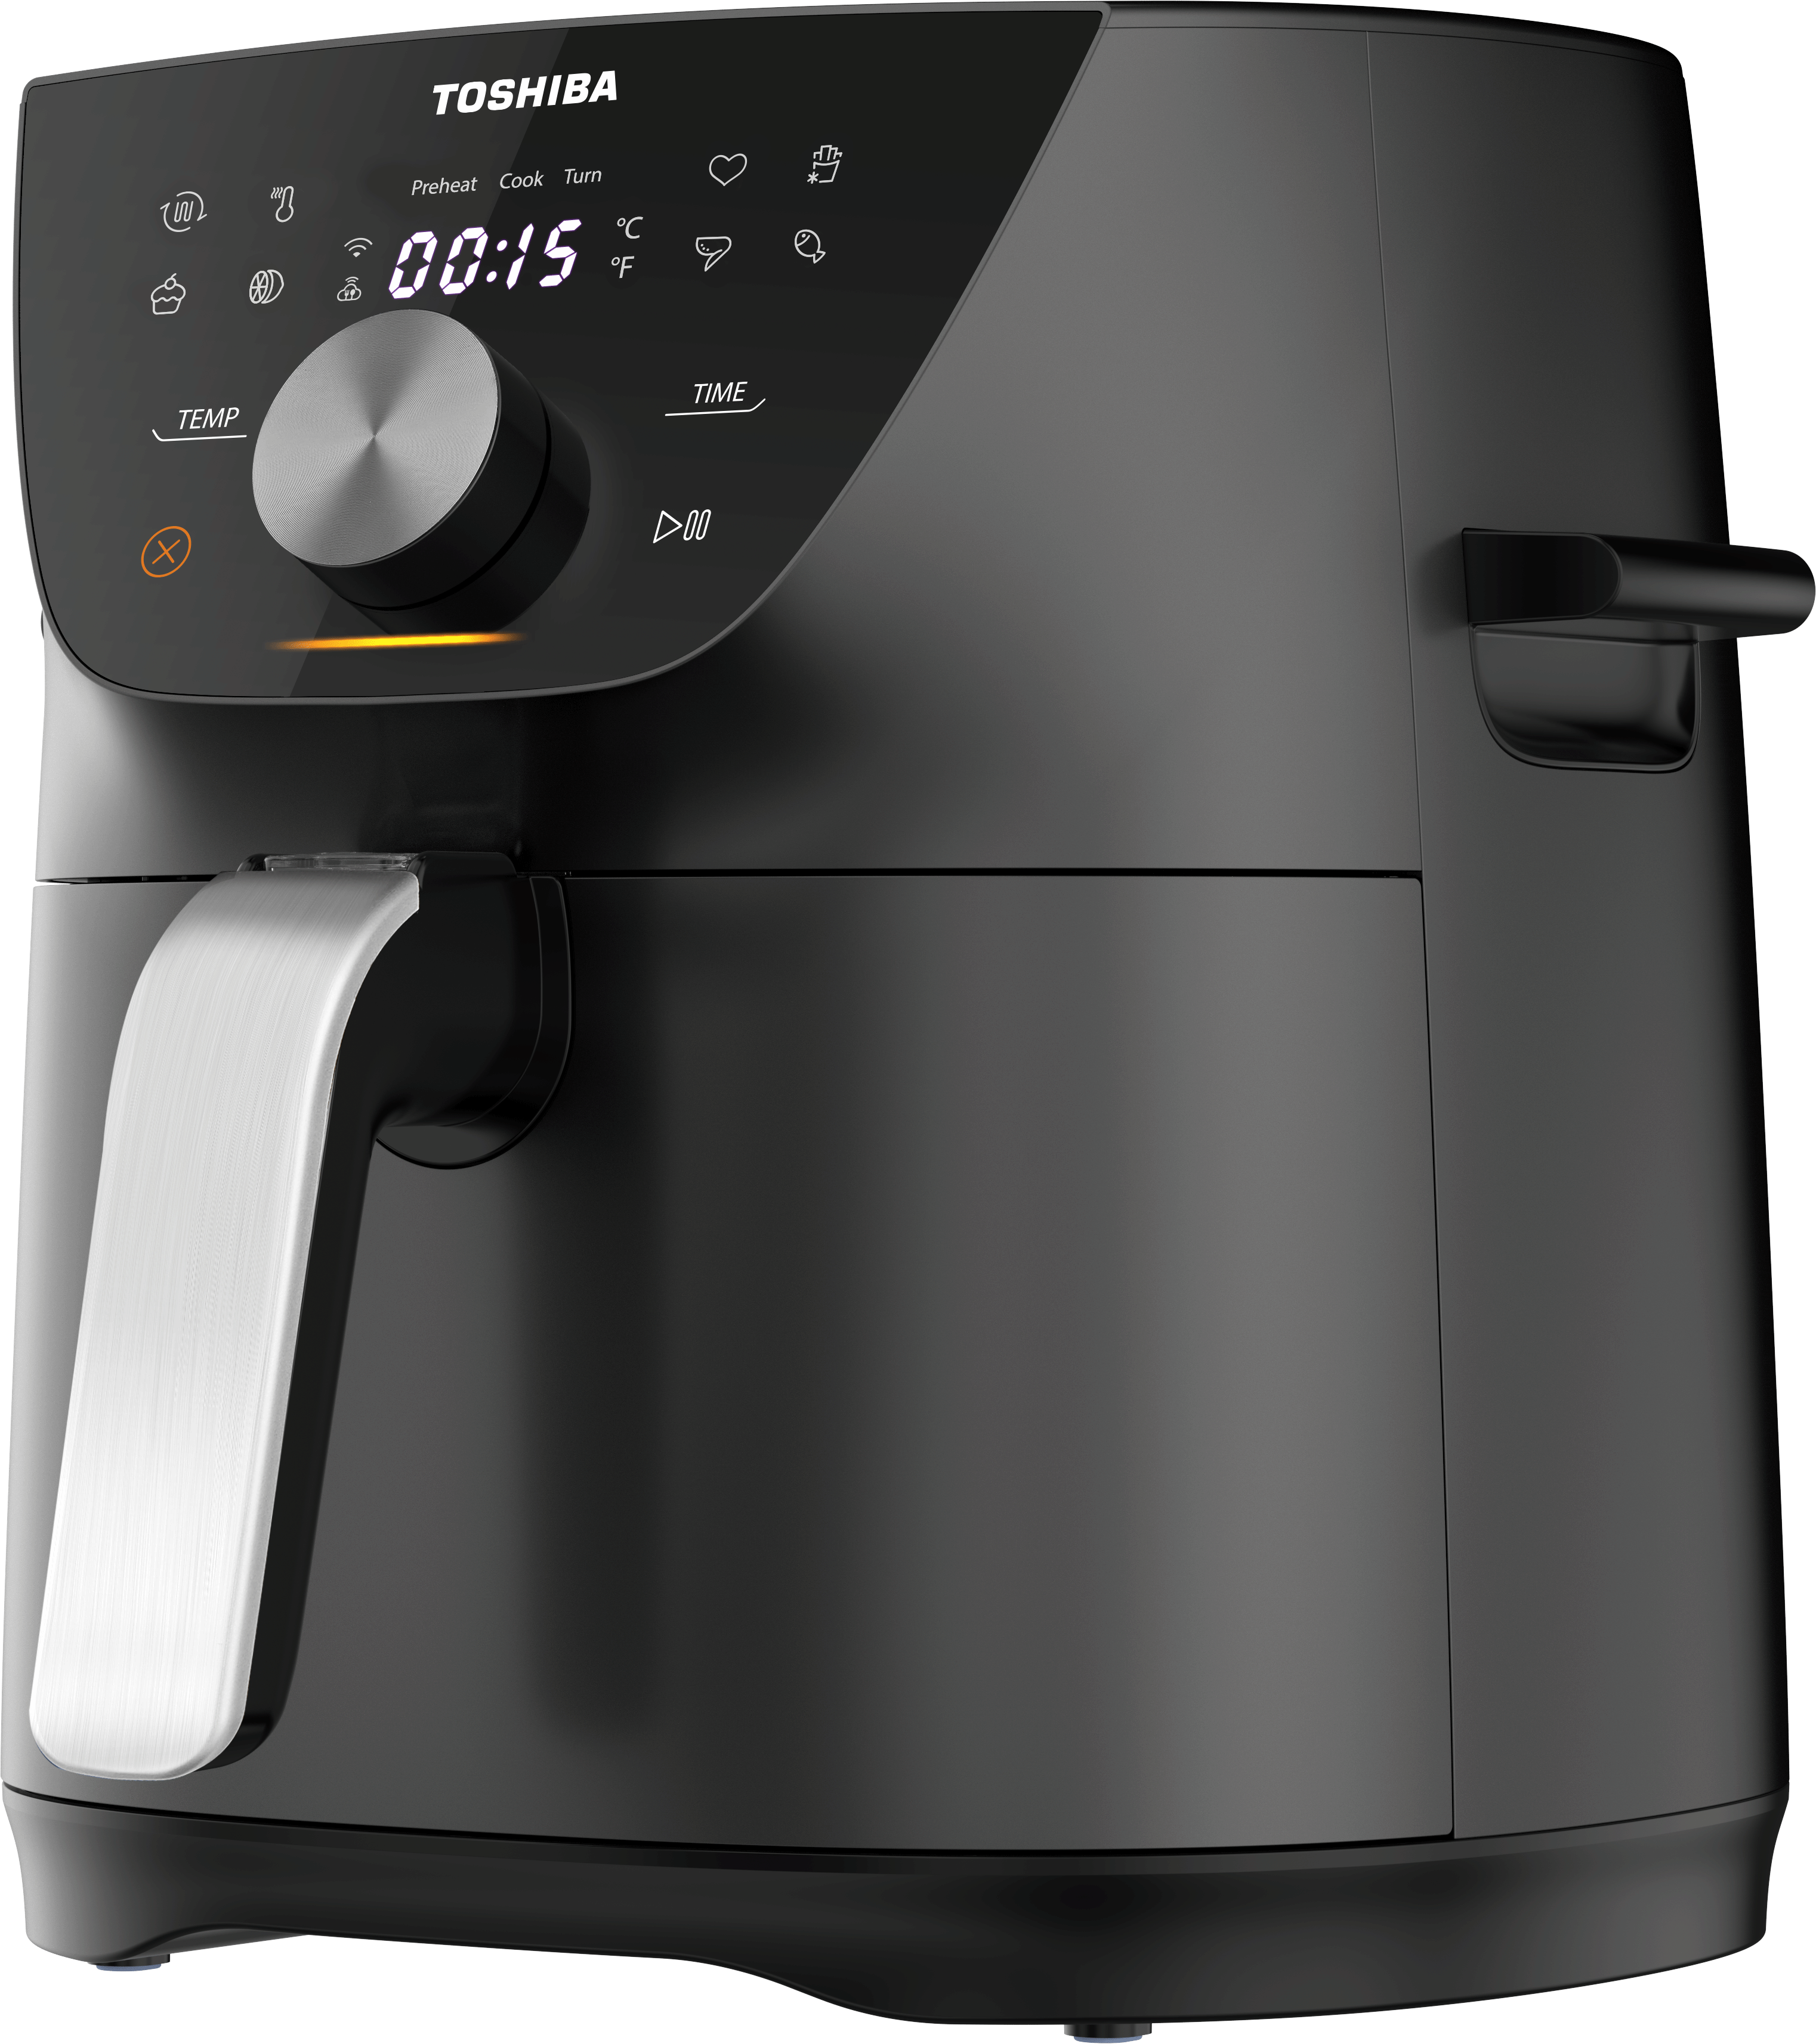 Digital Air Fryer - 5.2 Liter Capacity